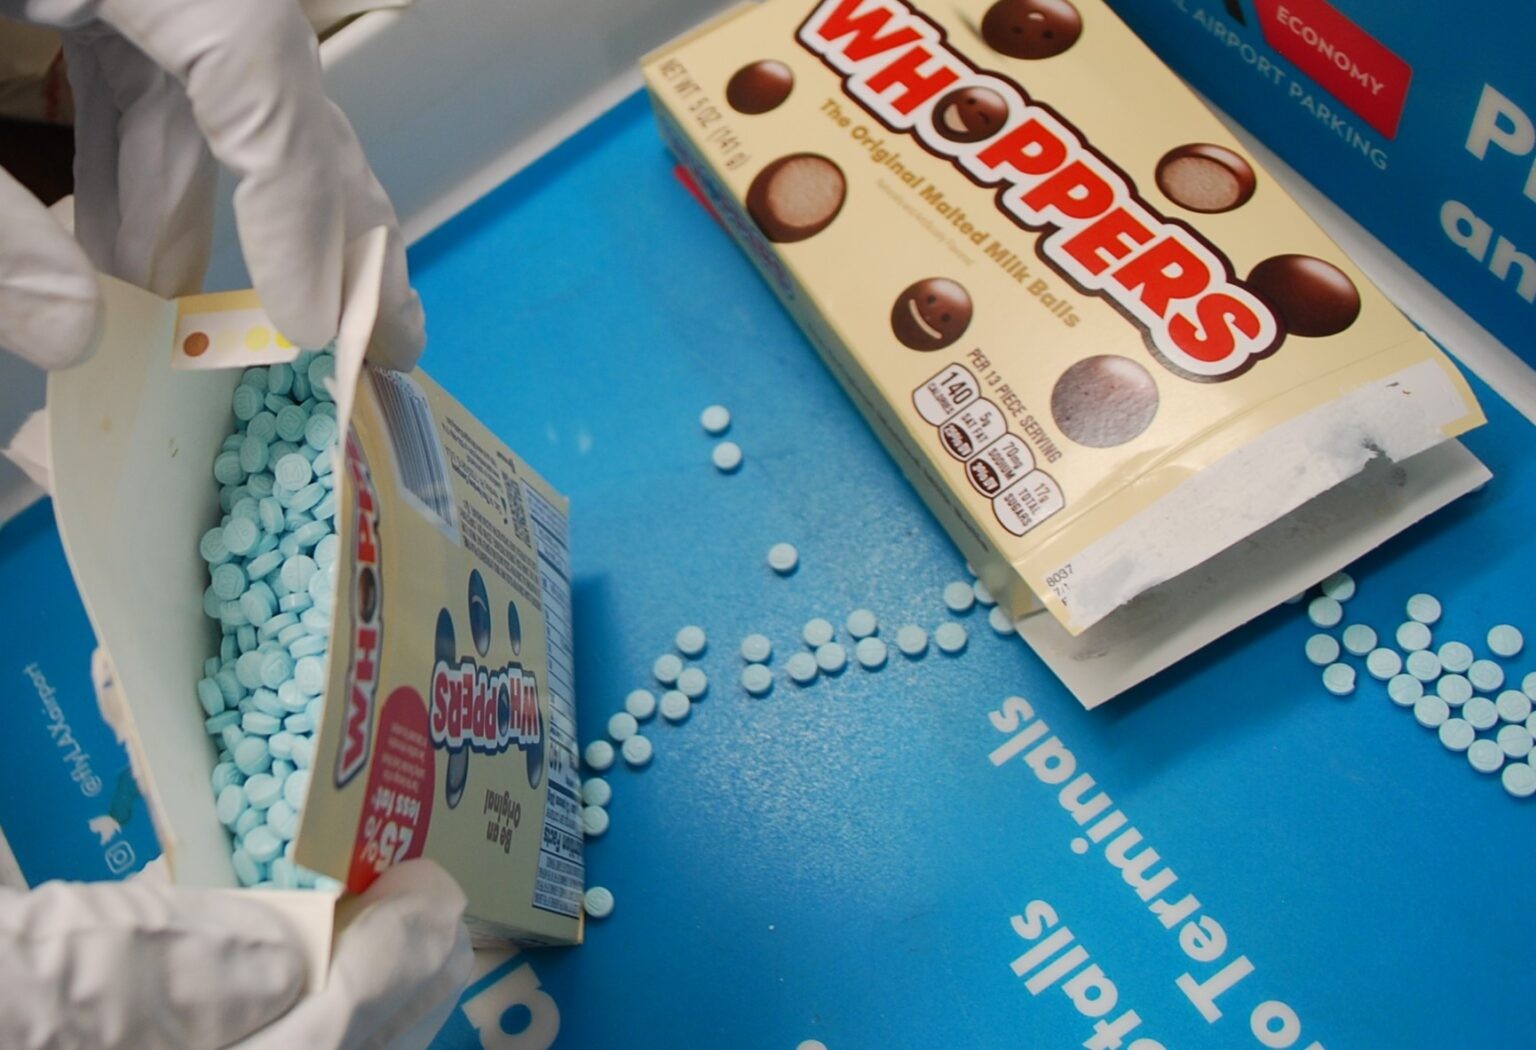 Comprimidos de fentanil foram encontrados em embalagens de doces, nos EUA — Foto: Divulgação/Polícia de Los Angeles